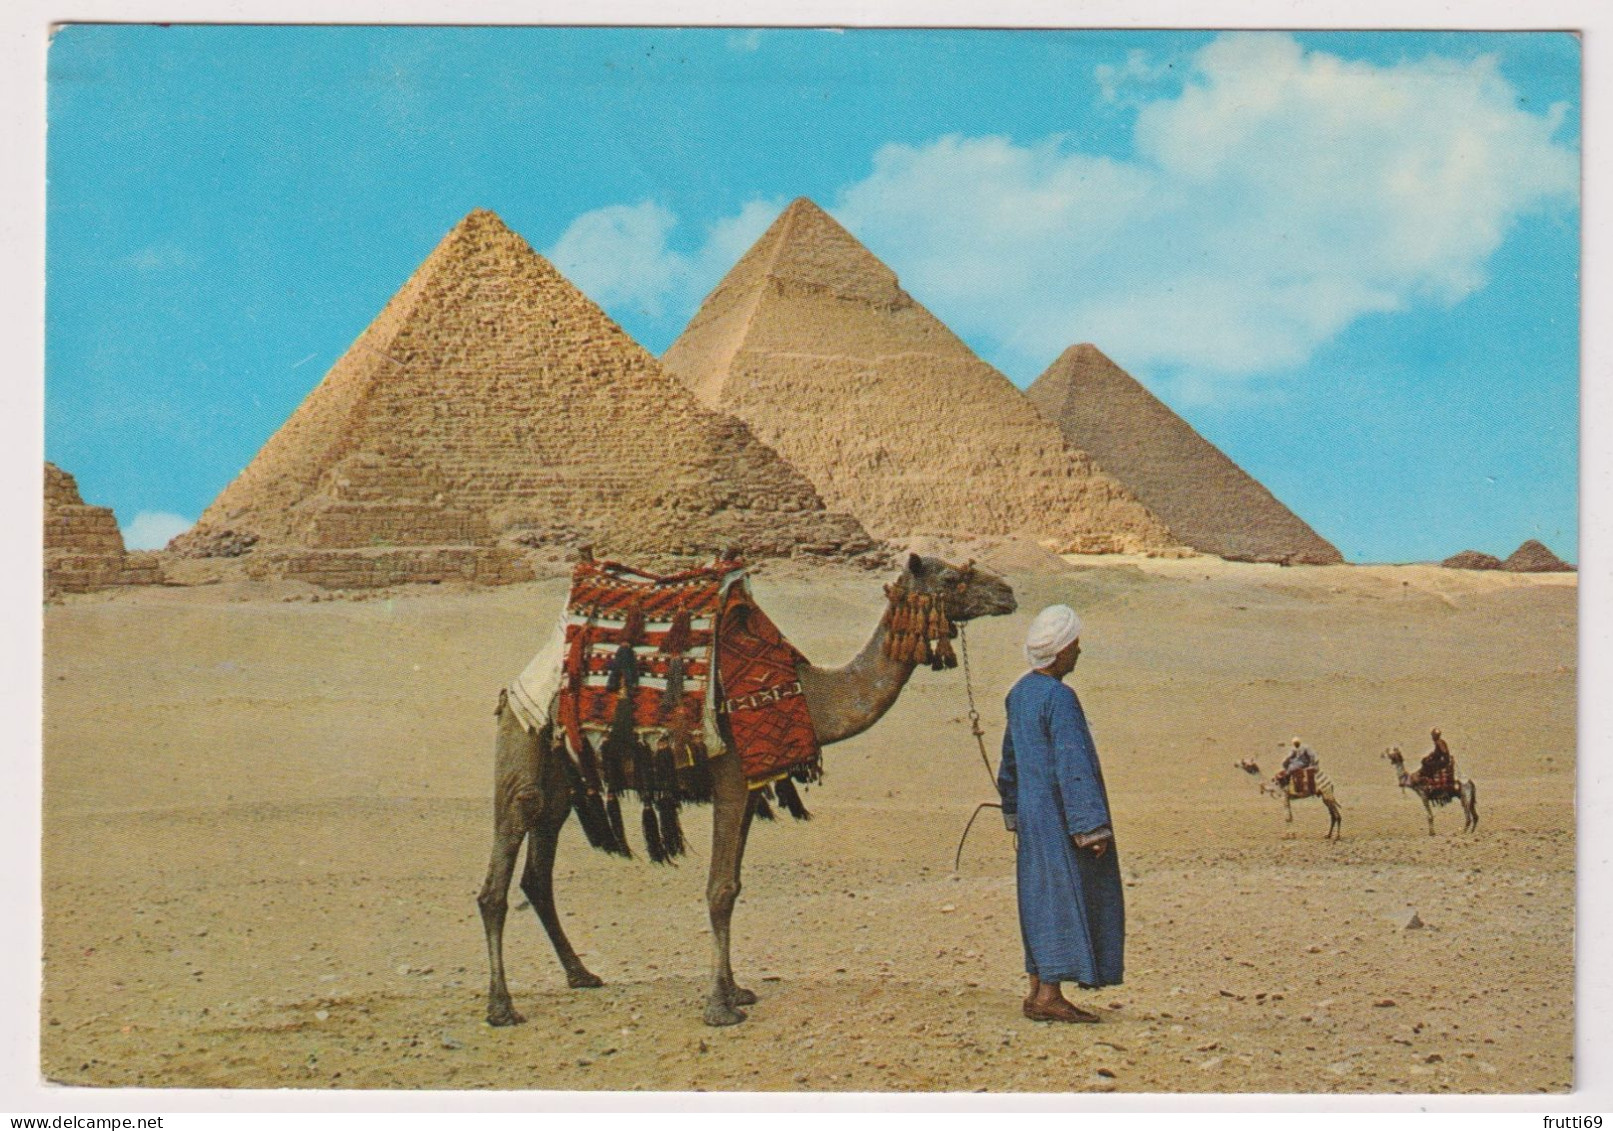 AK 198218 EGYPT - Giza - The Giza Pyramids - Pyramiden